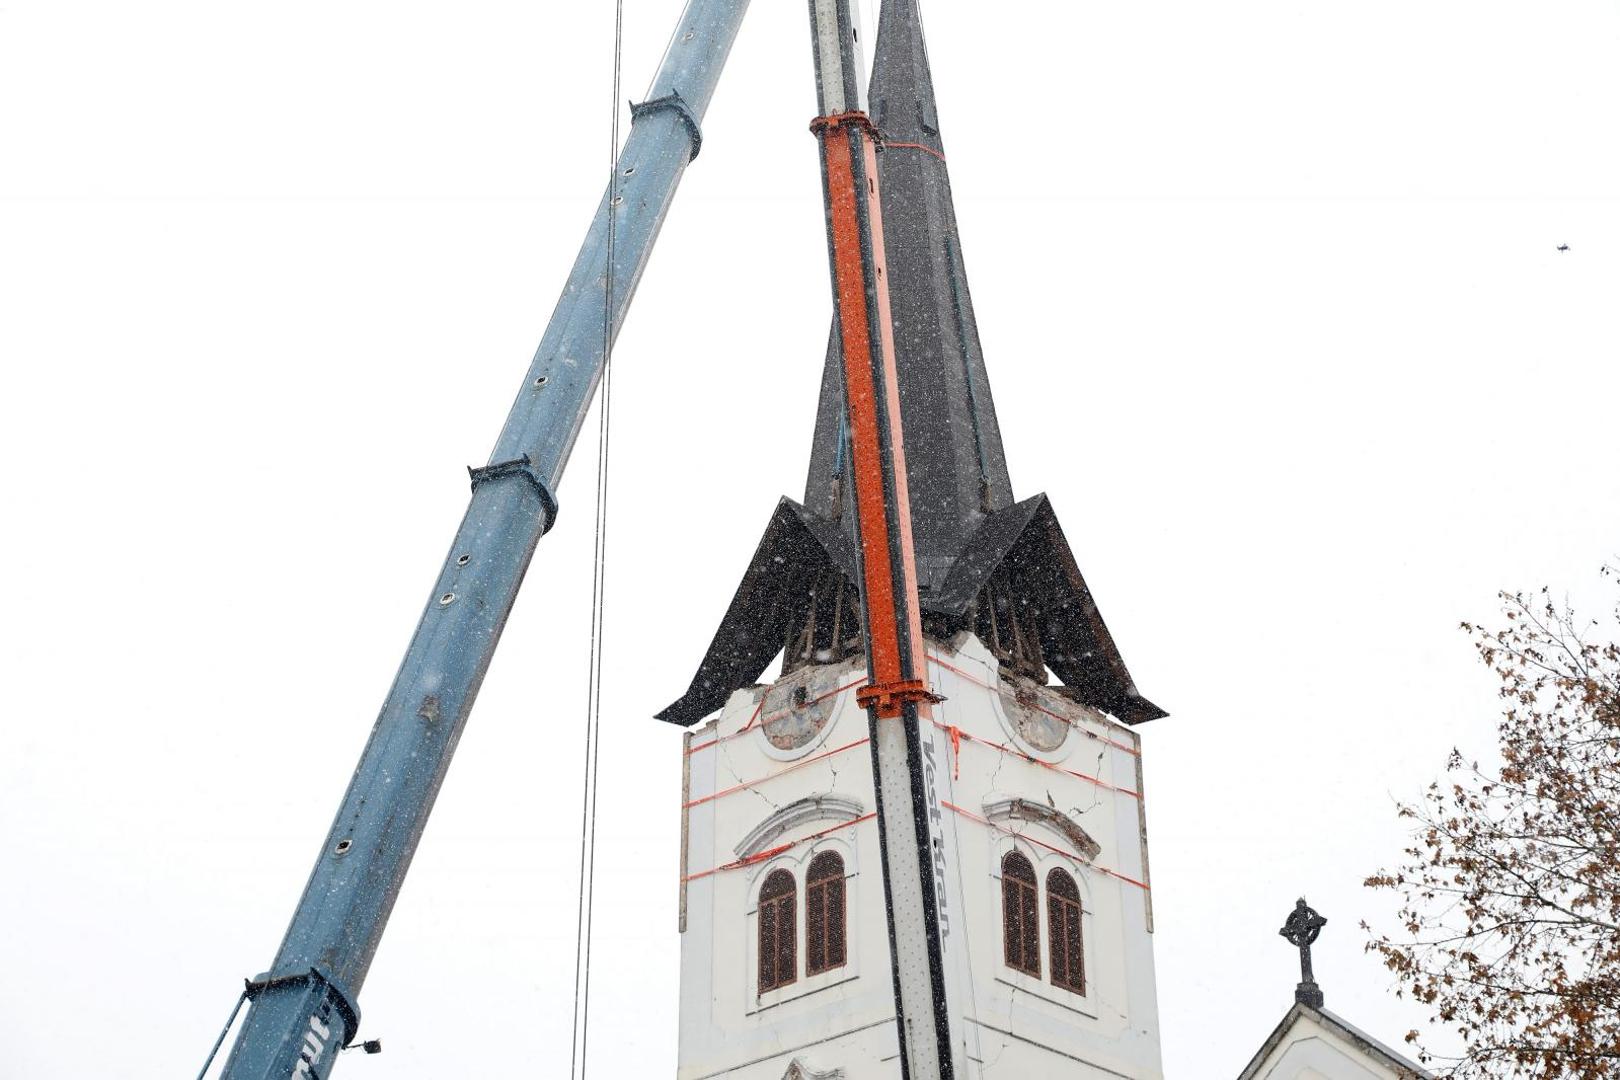 10.01.2021., Sisak - Uklanjanje tornja katedrale u Sisku koji je ostecen u razornom potresu. 
Photo: Edina Zuko/PIXSELL